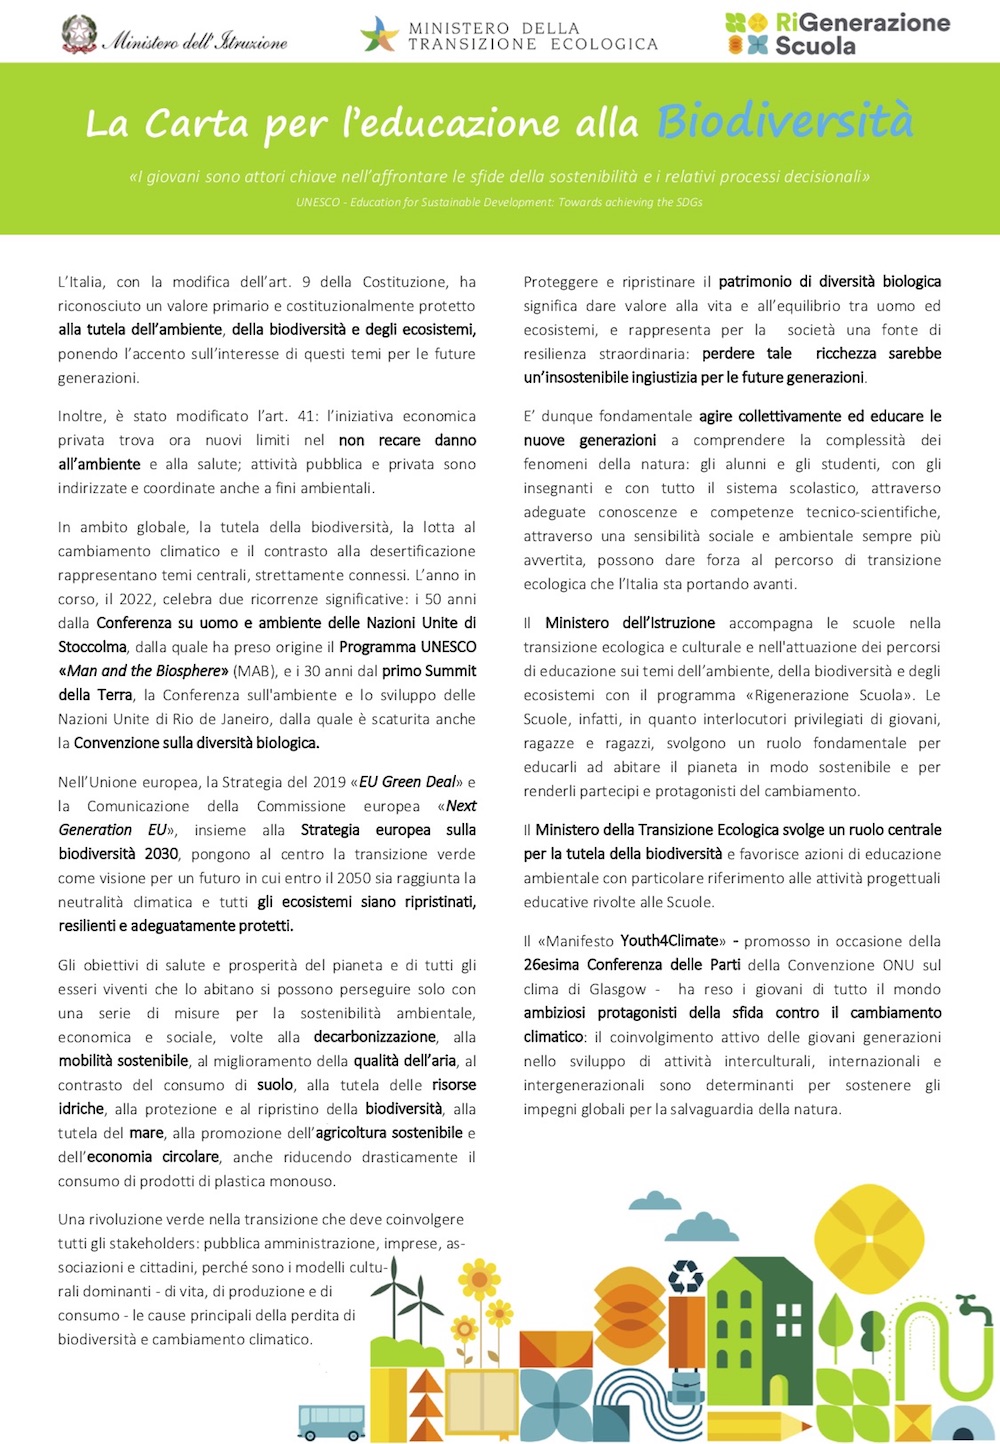 carta_per_l_educazione_alla_biodiversita170522